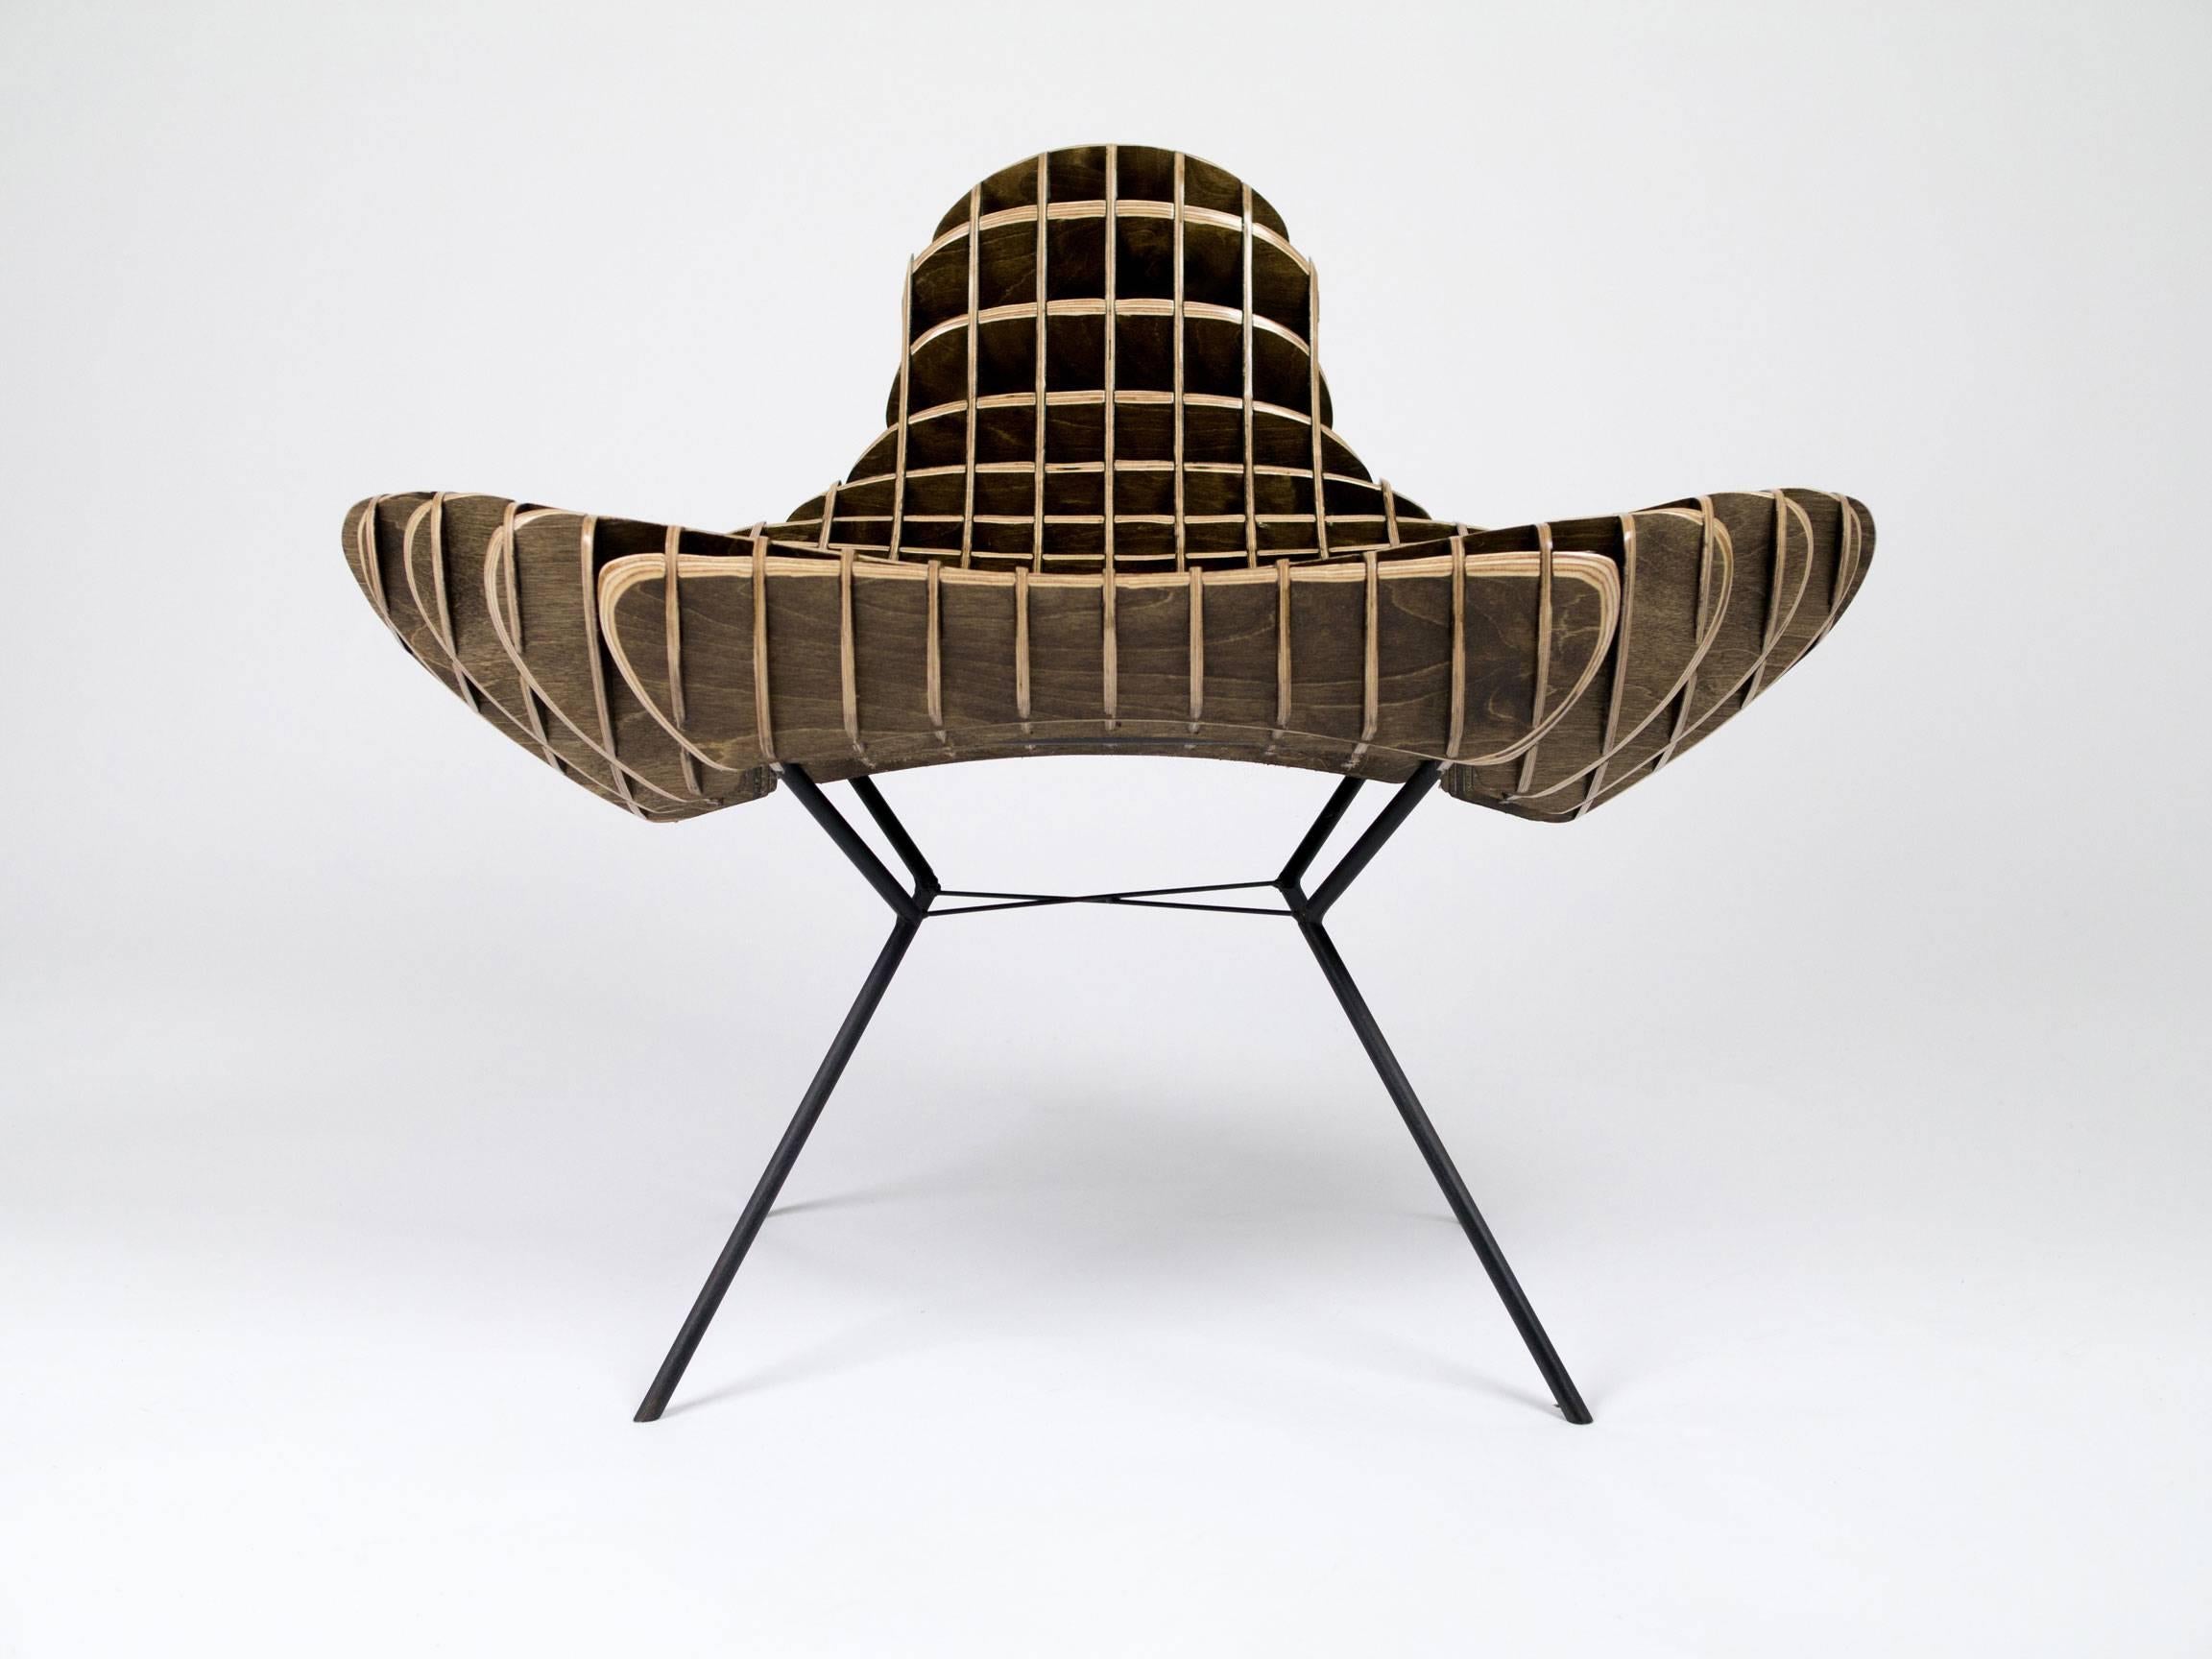 Der Bantam-Stuhl aus der The Quarry Collection'S. Zwei sind jetzt verfügbar.

Ryan Darte ist kein gewöhnlicher Designer, und um ihn mit seinen eigenen Worten zu zitieren.

Wir haben festgestellt, dass die Inspiration kommt, wie und wo immer sie